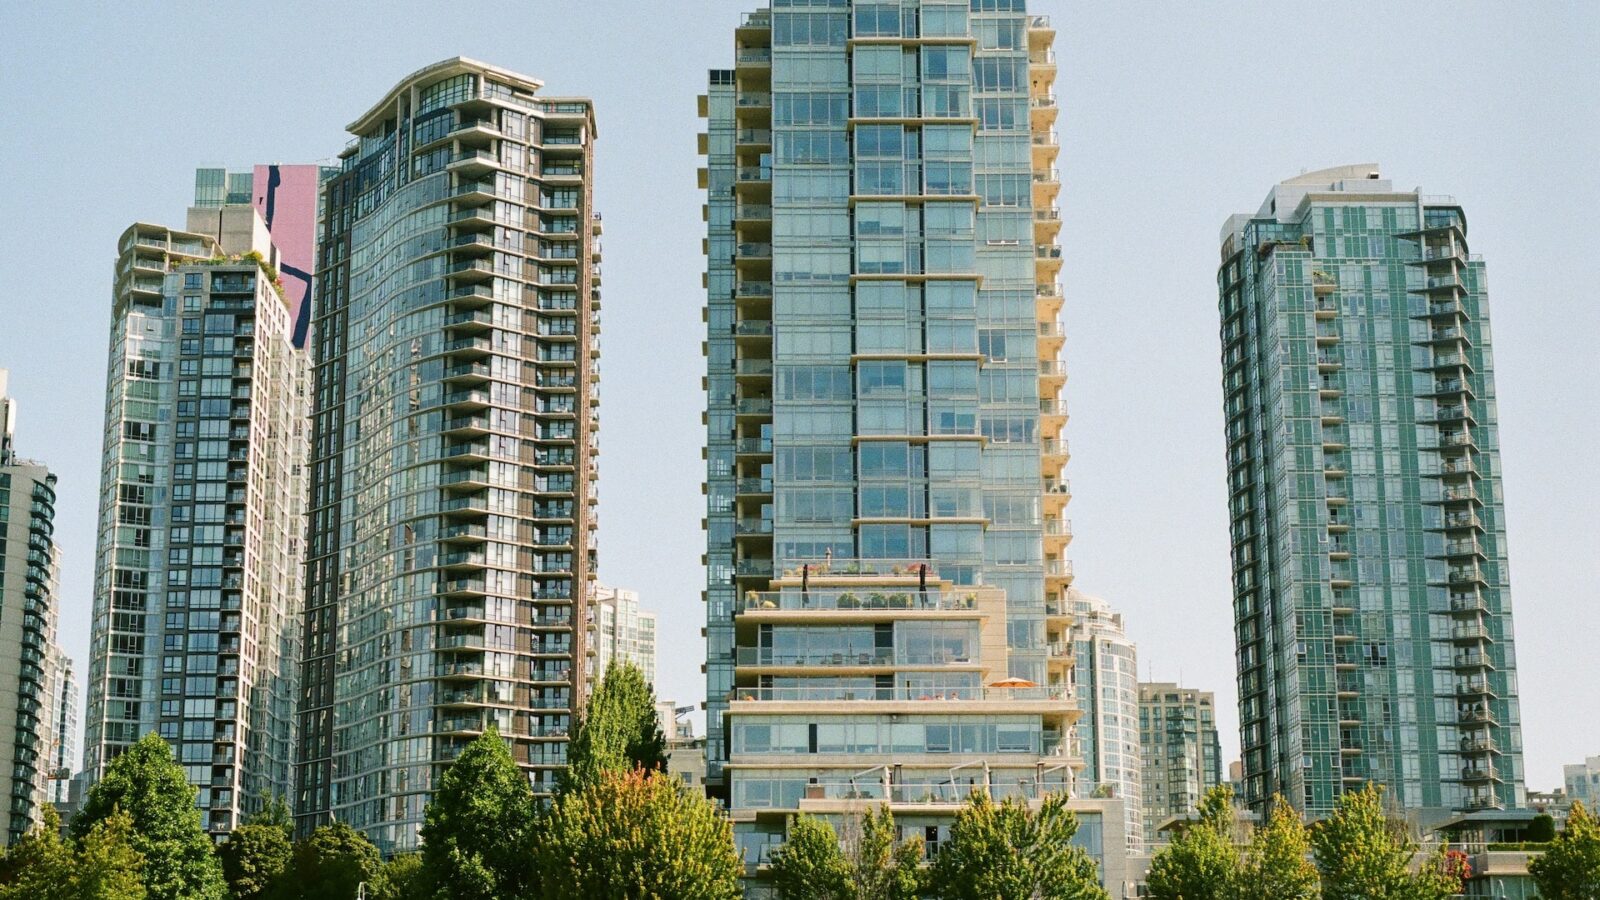 High-rise condominium buildings